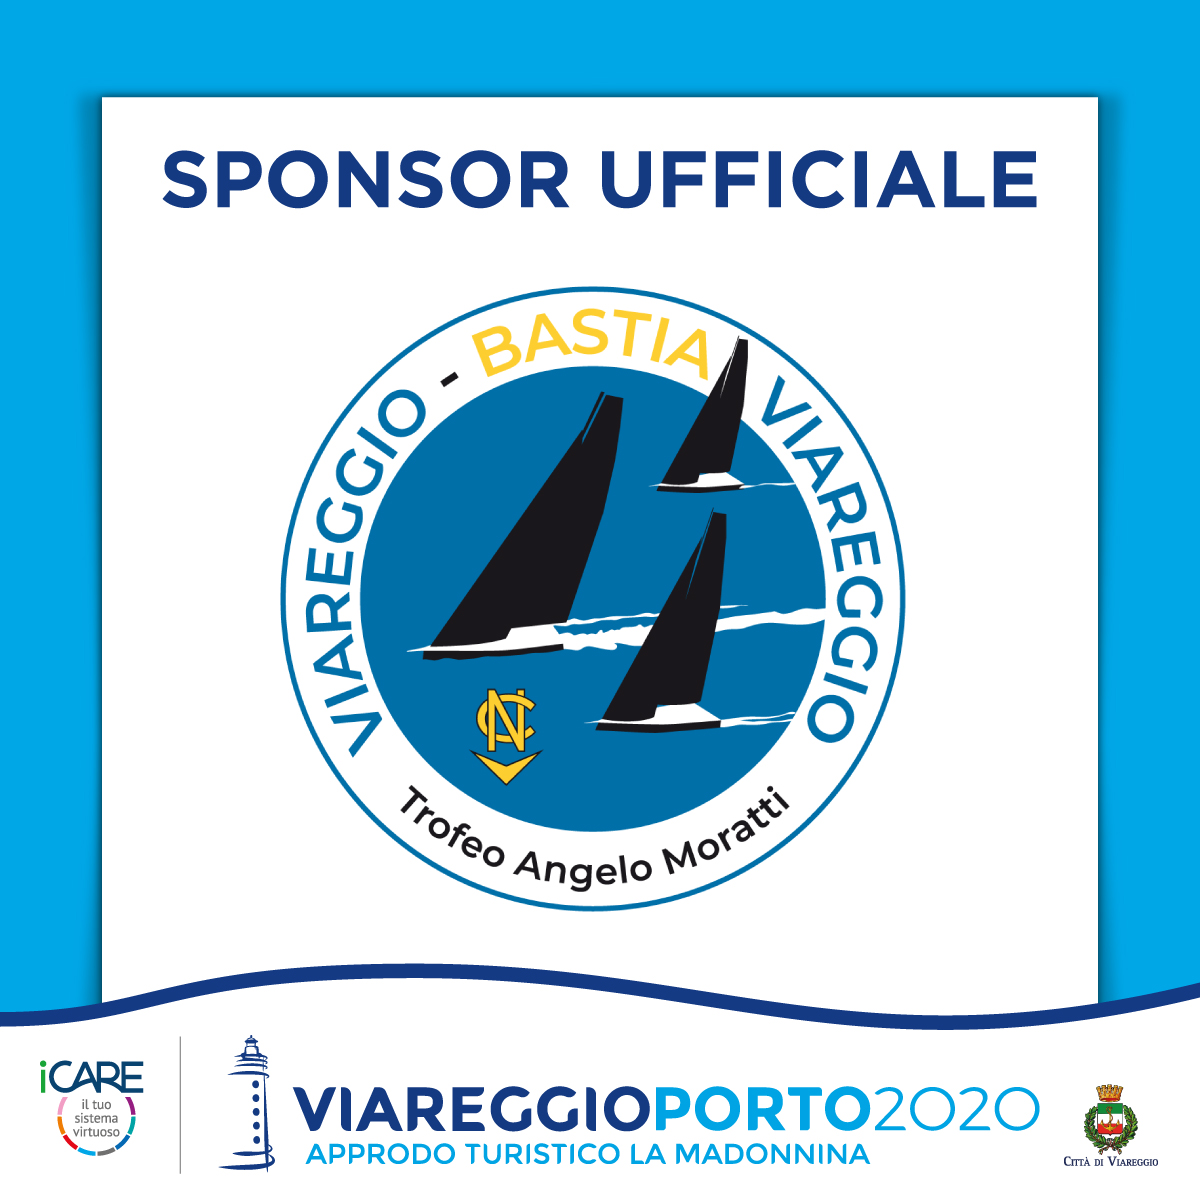 ViareggioPorto2020 sponsor ufficiale della Viareggio Bastia Viareggio 2022